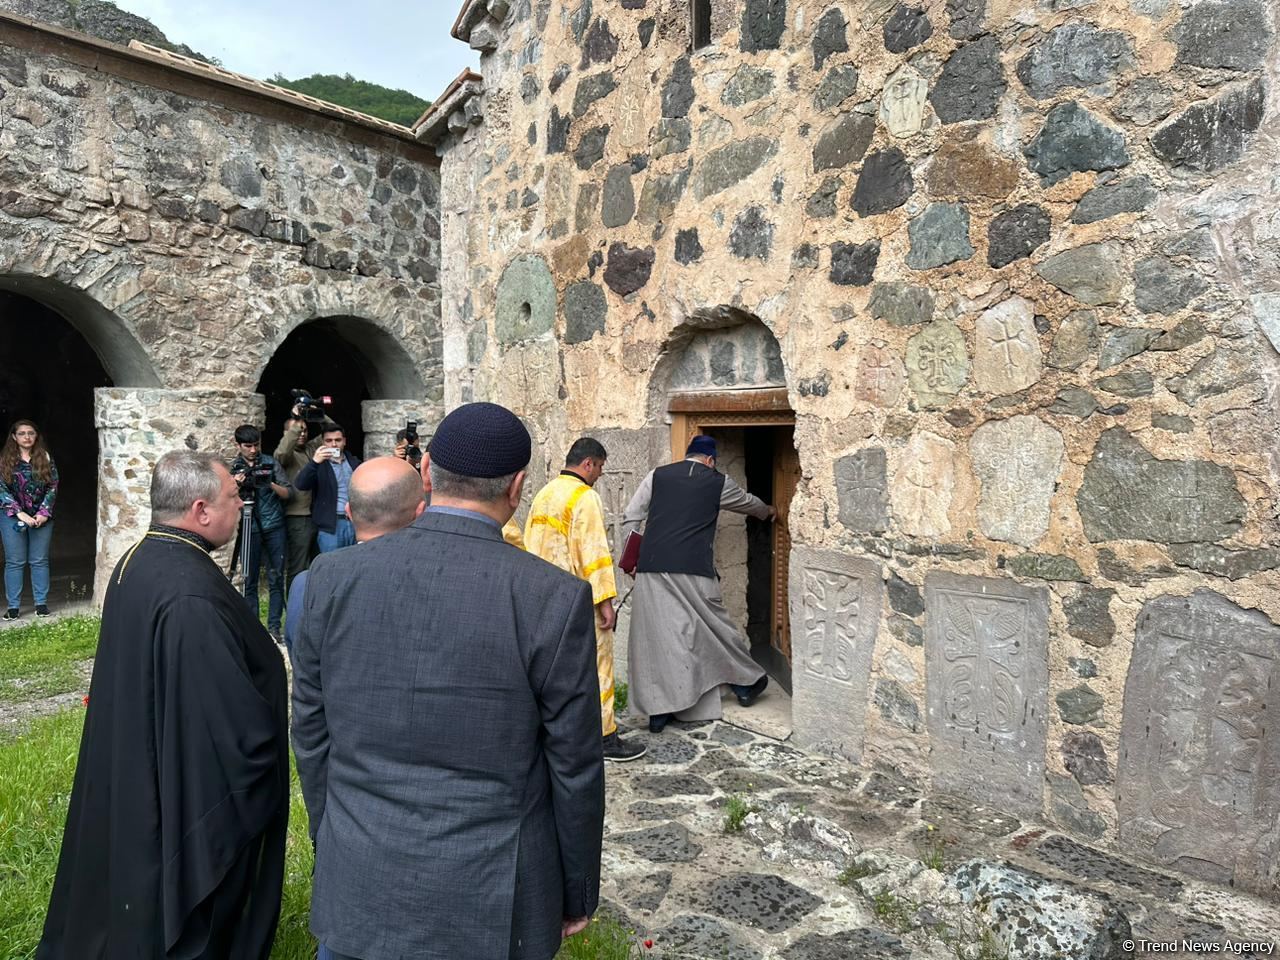 Представители христианской и еврейской общин Азербайджана посетили монастырский комплекс Худавенг (ФОТО)